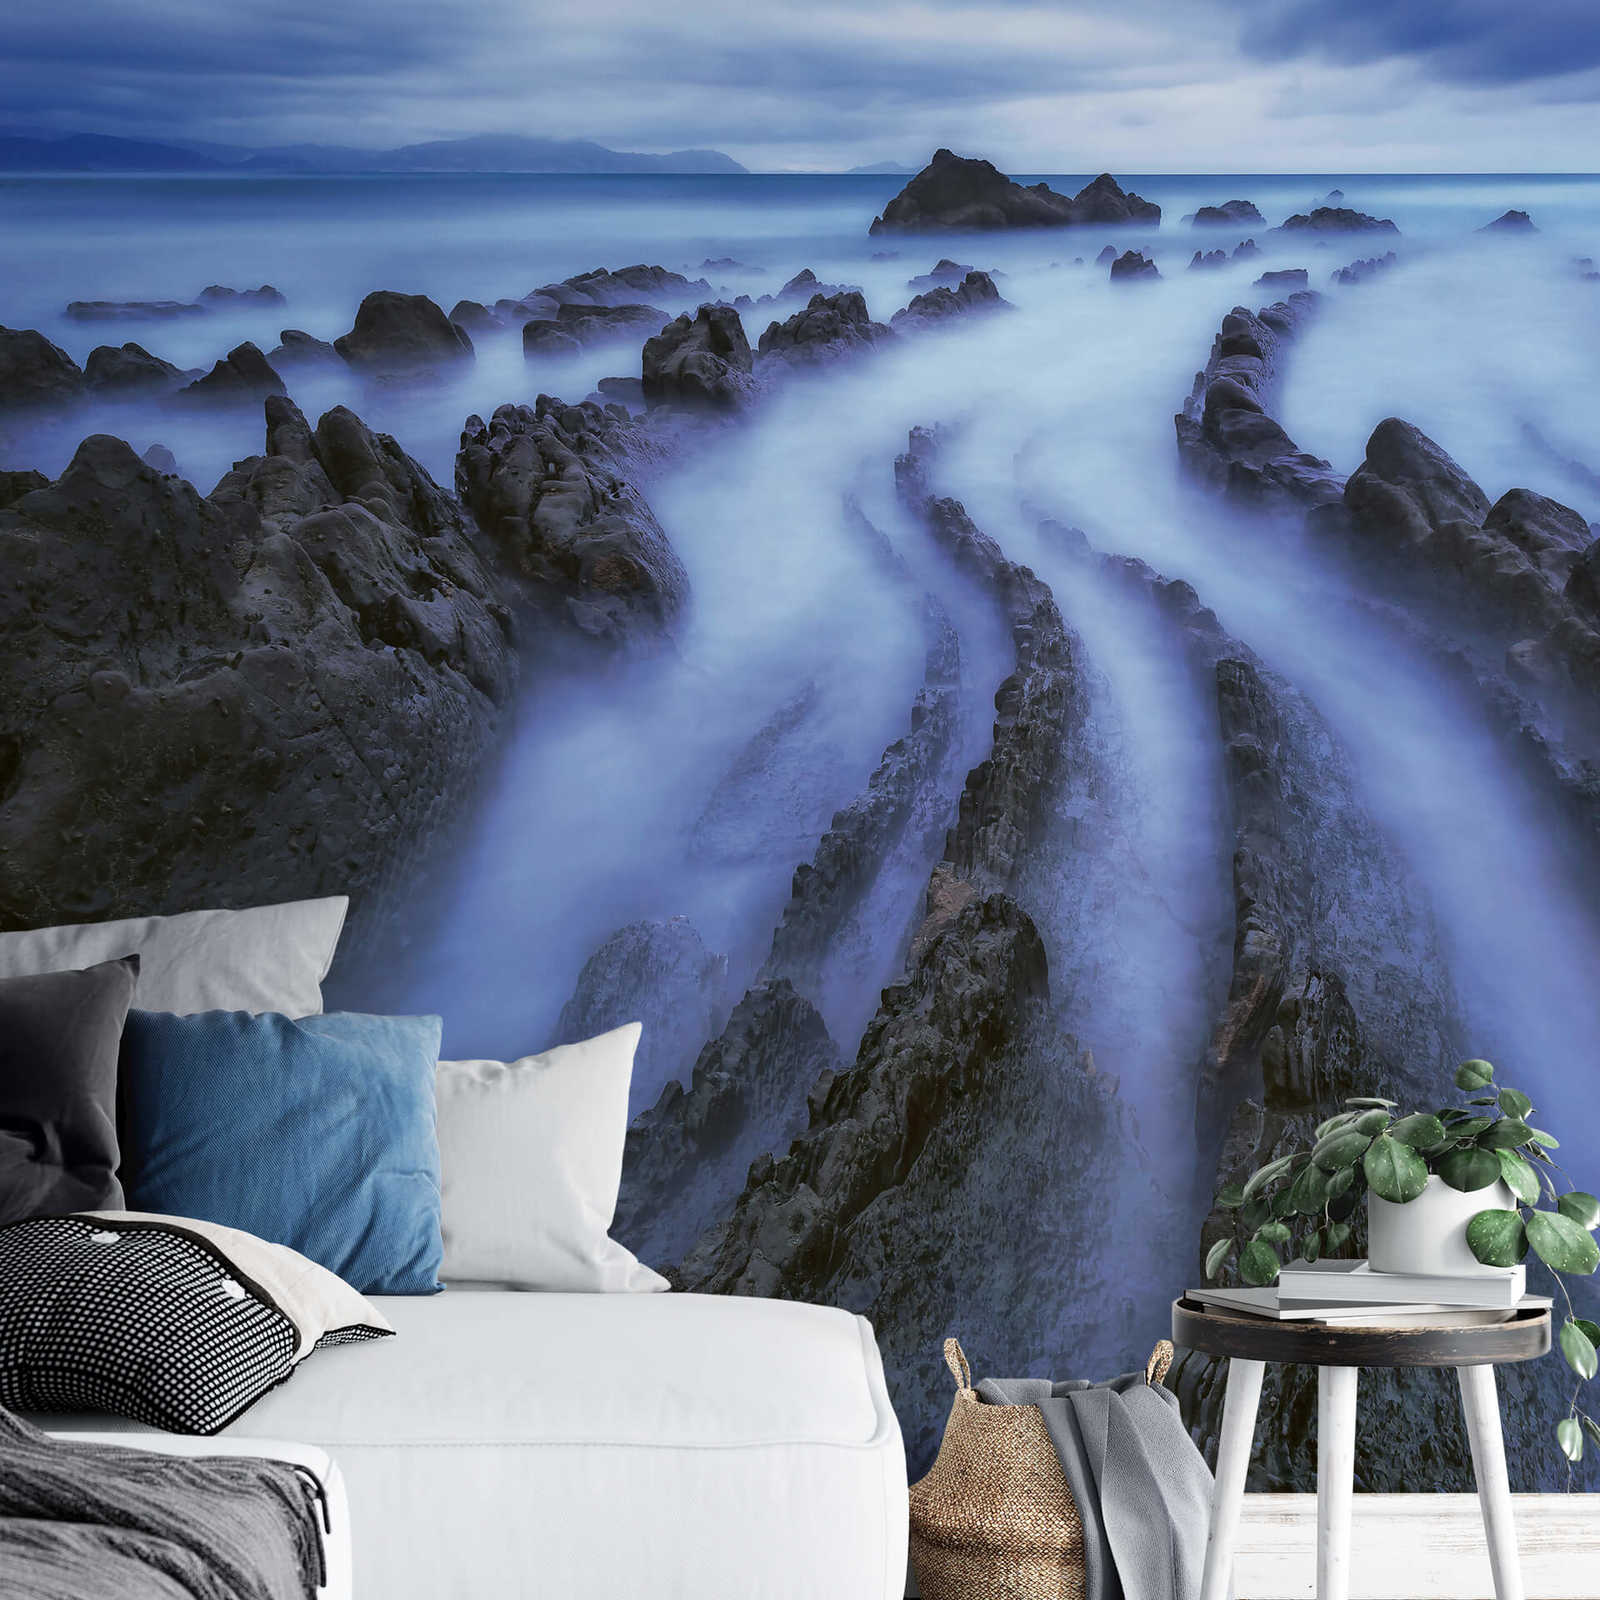             Fototapete Meer mit Nebel – Blau, Grau, Weiß
        